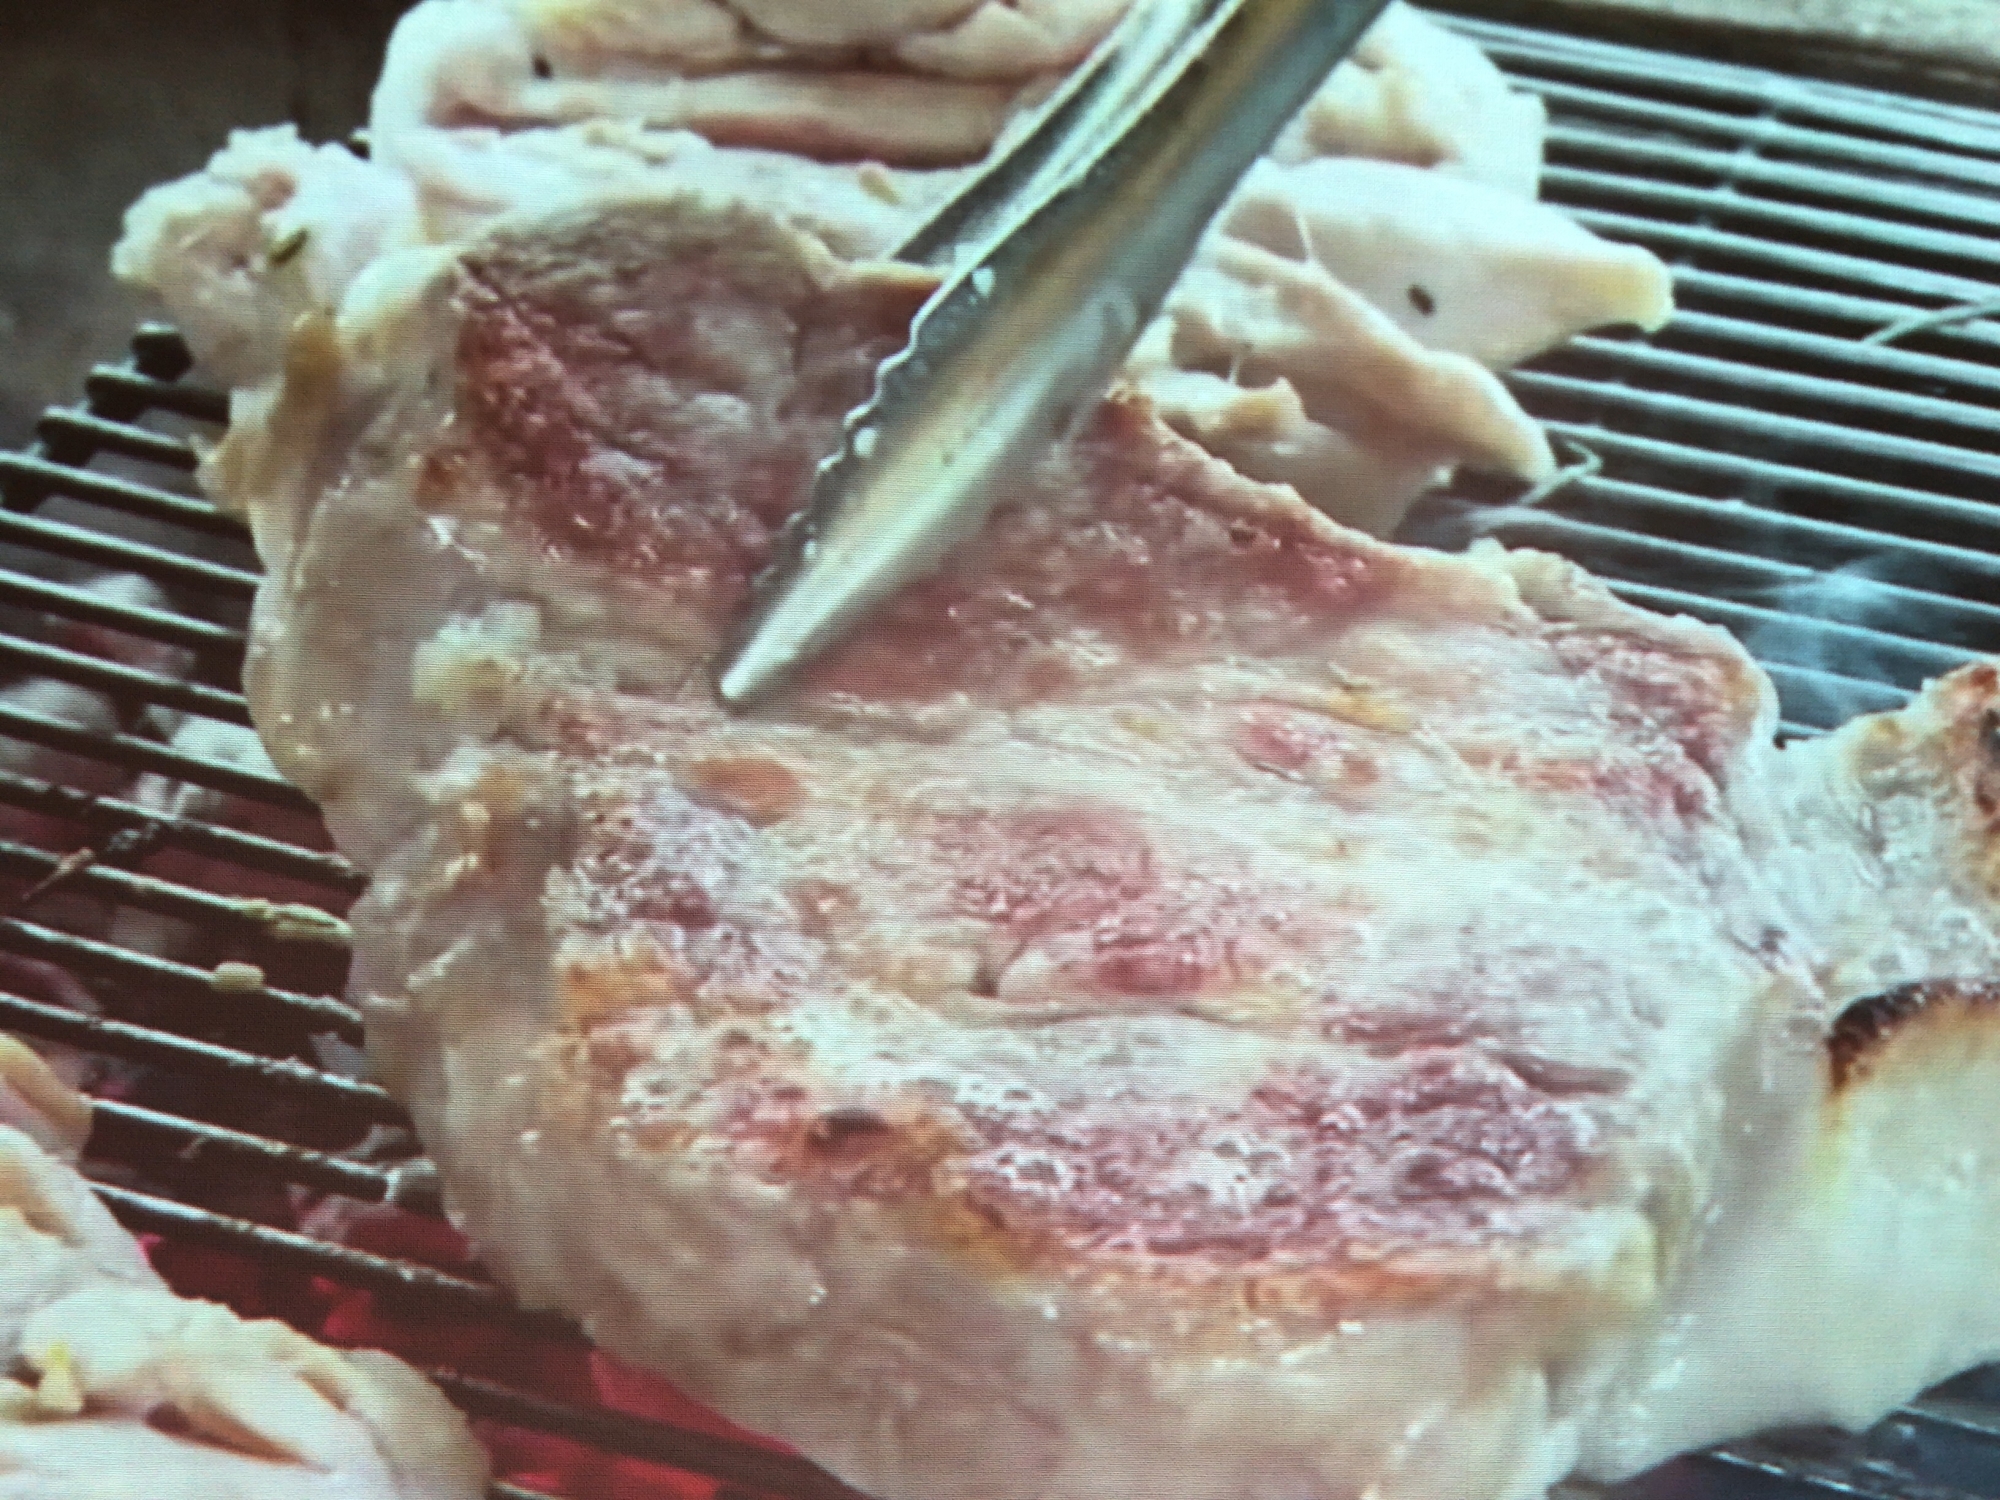 【BBQ料理】豚肩ロースのハーブ漬け焼き